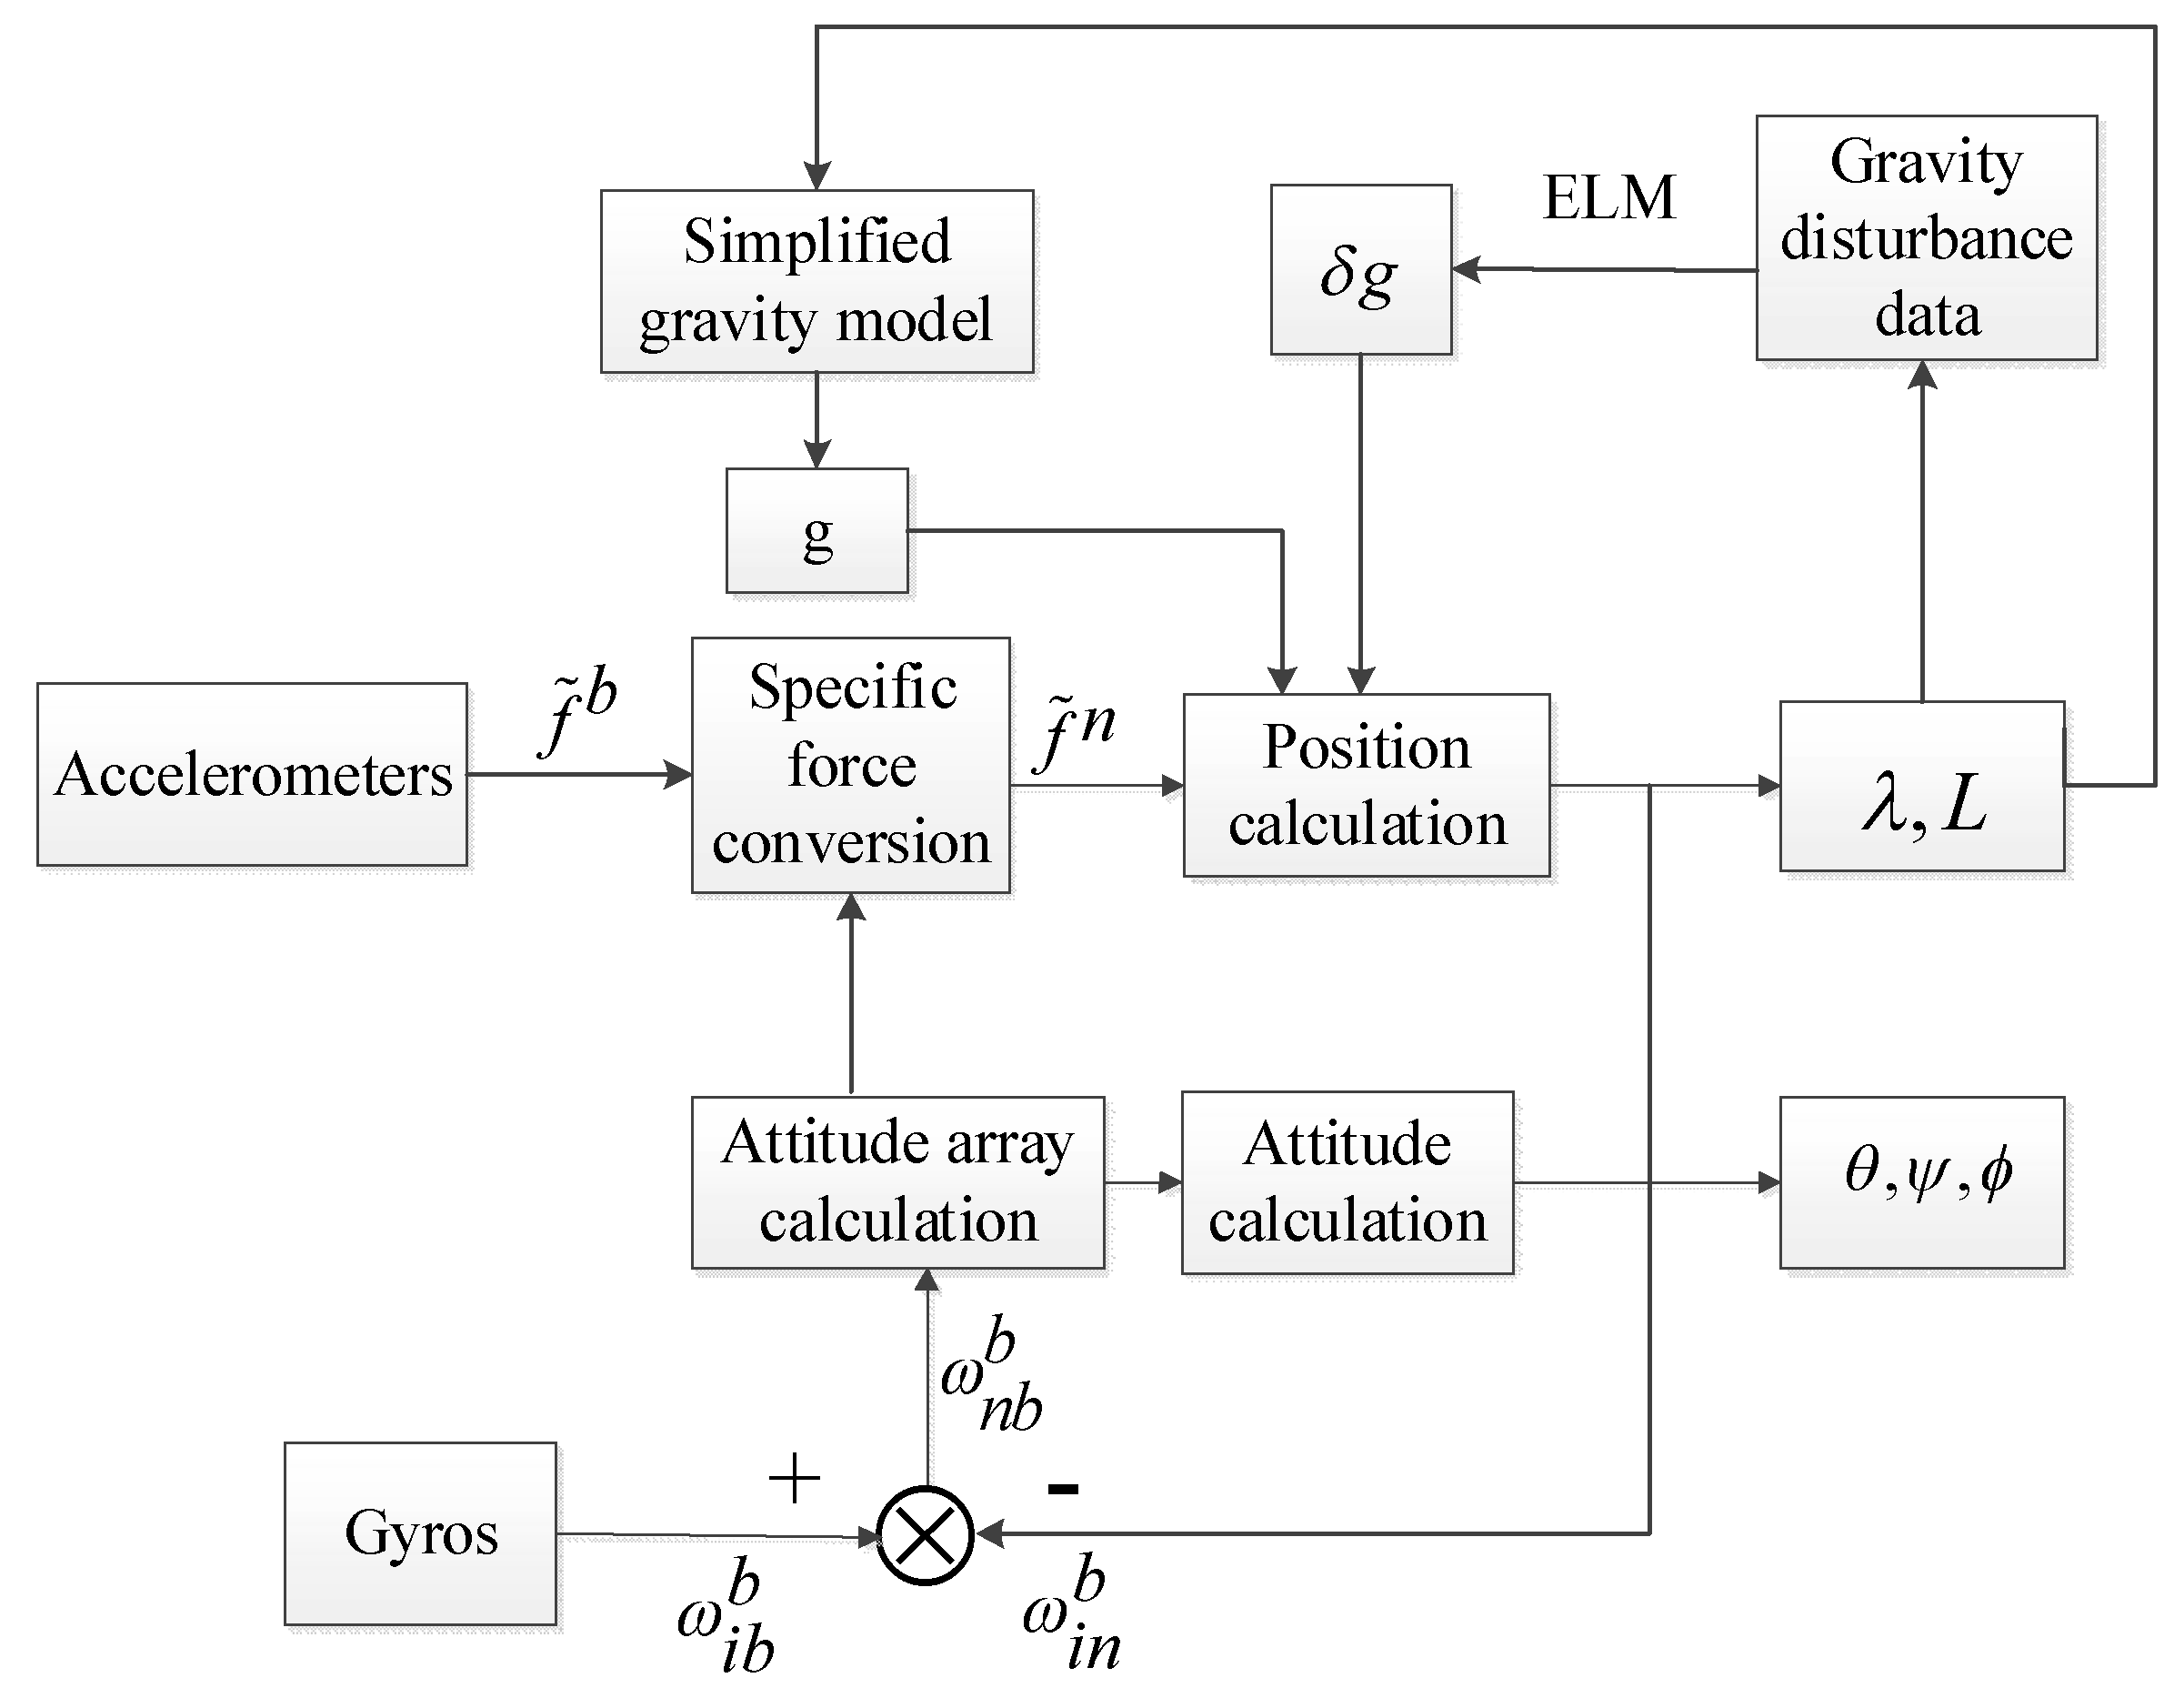 Aphg gravity model